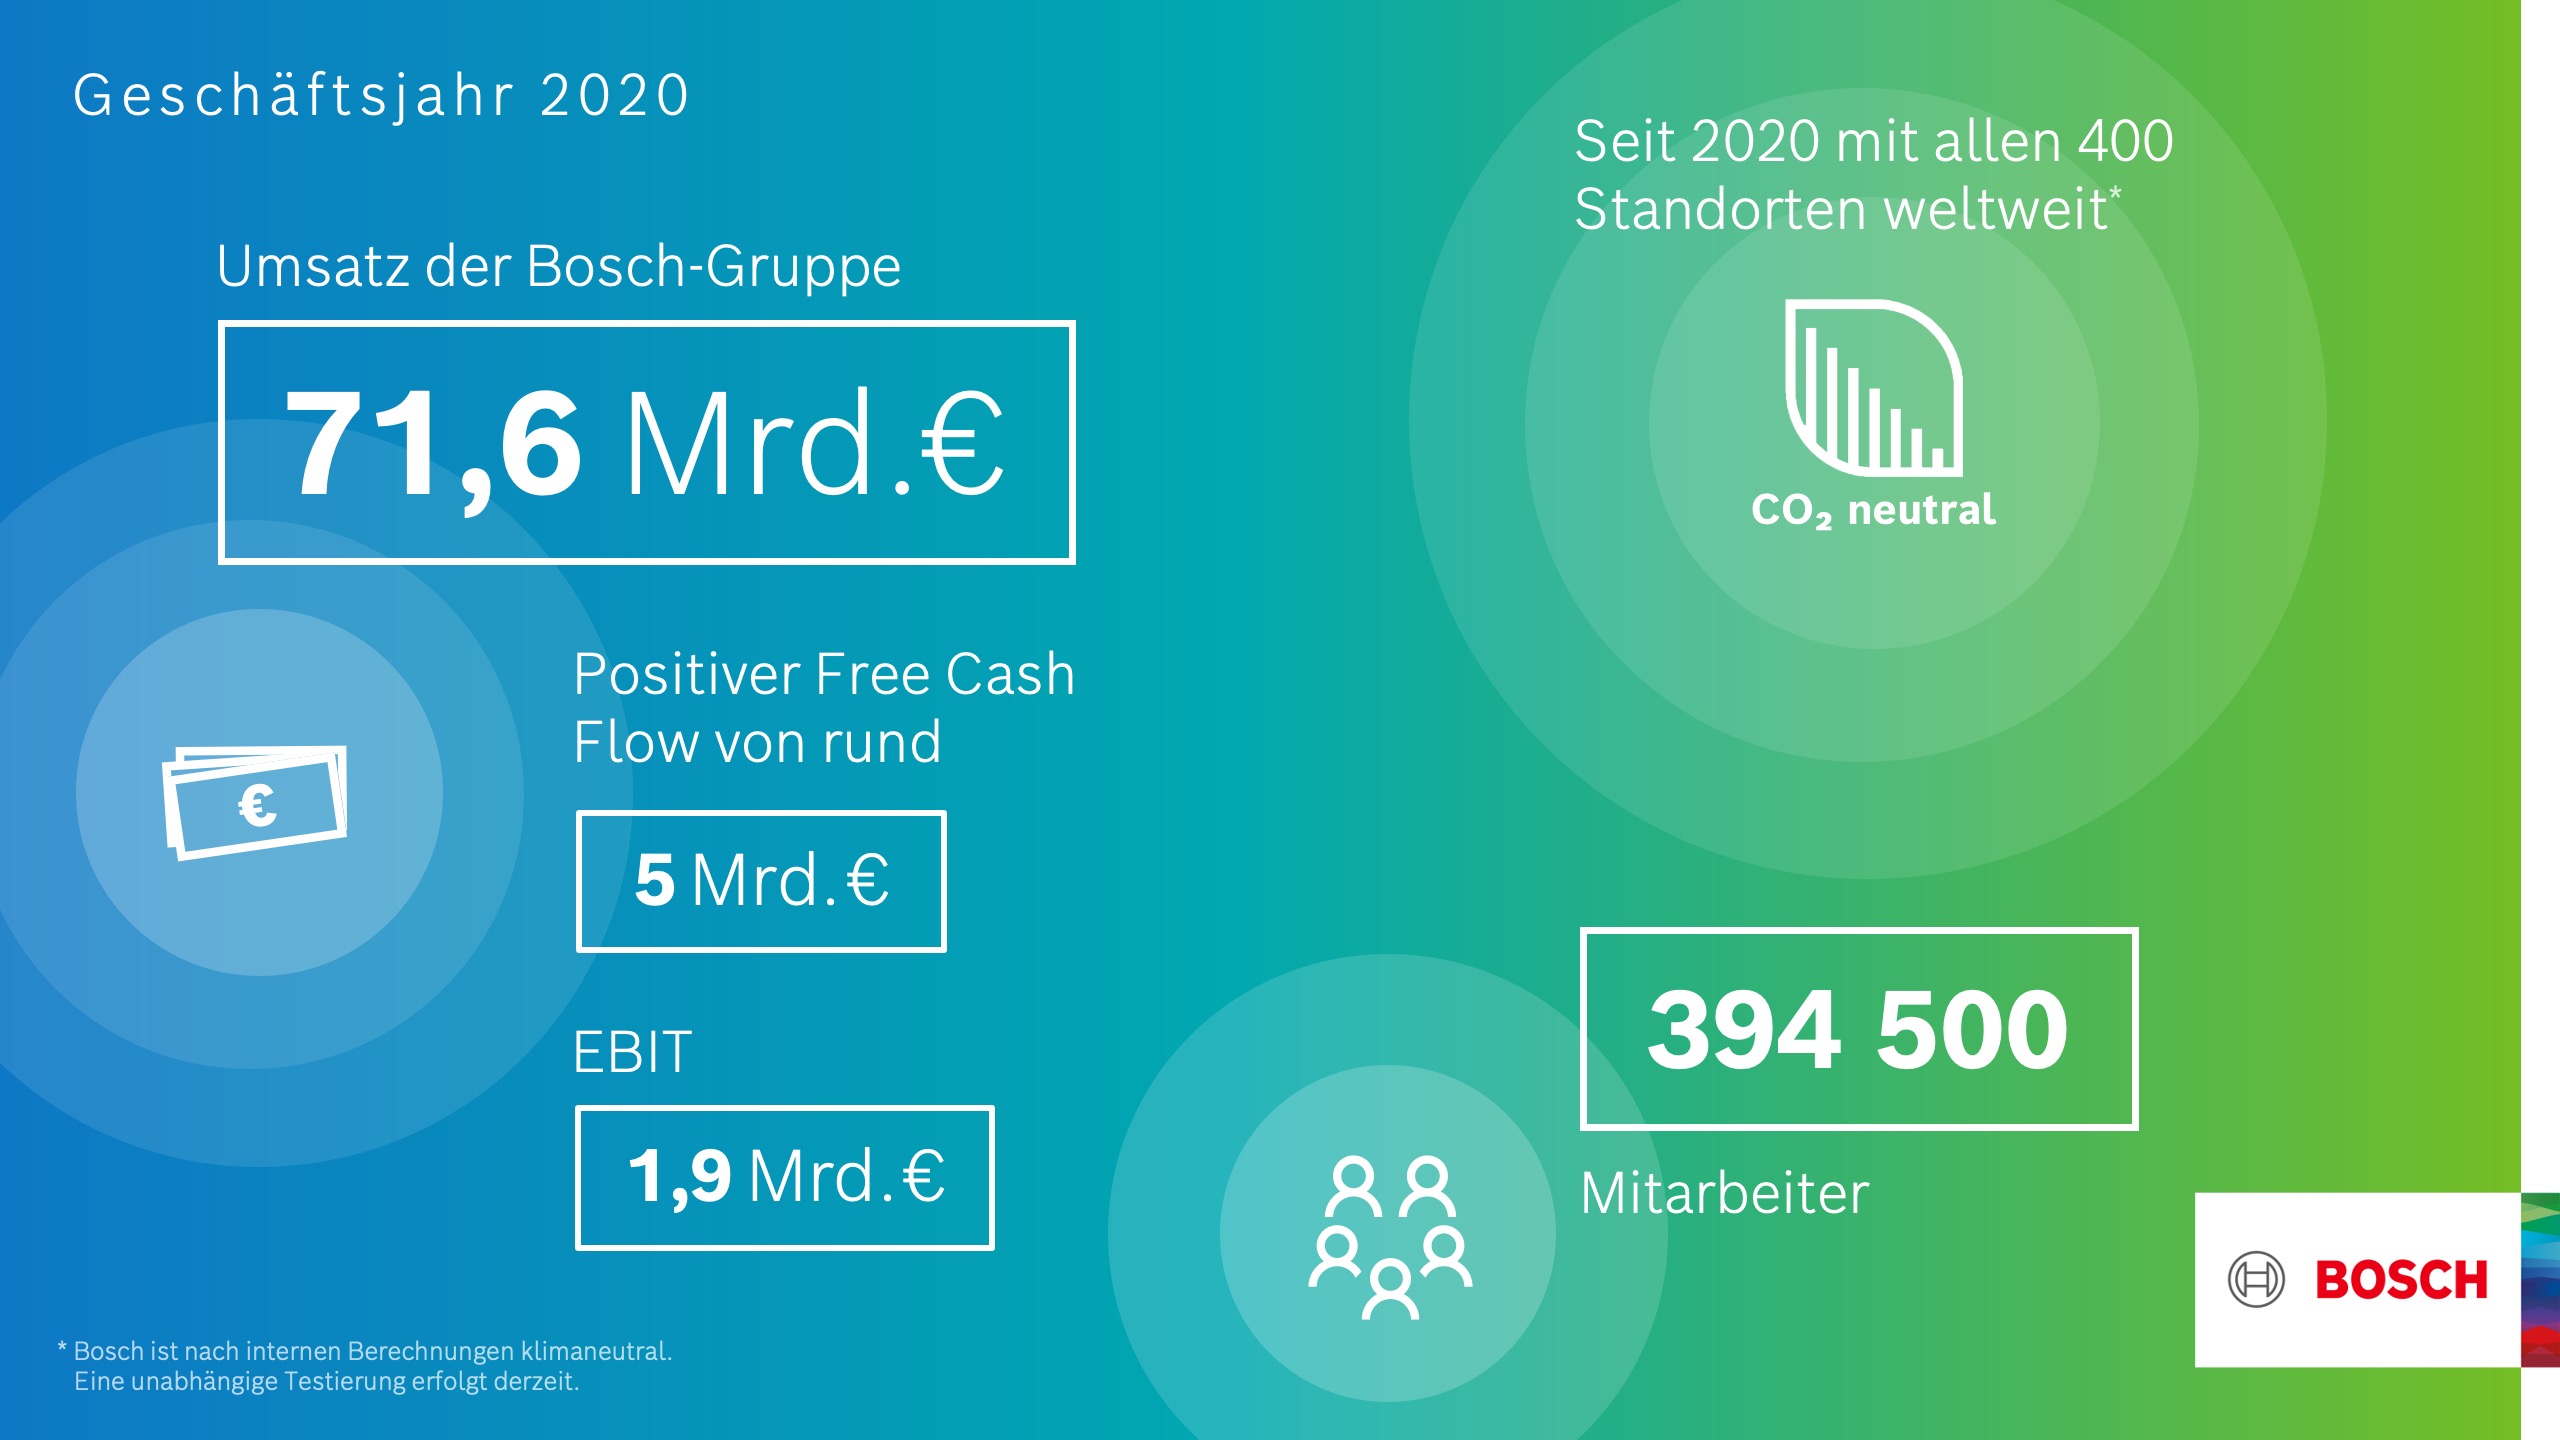 Bosch: Vorläufige Geschäftszahlen 2020